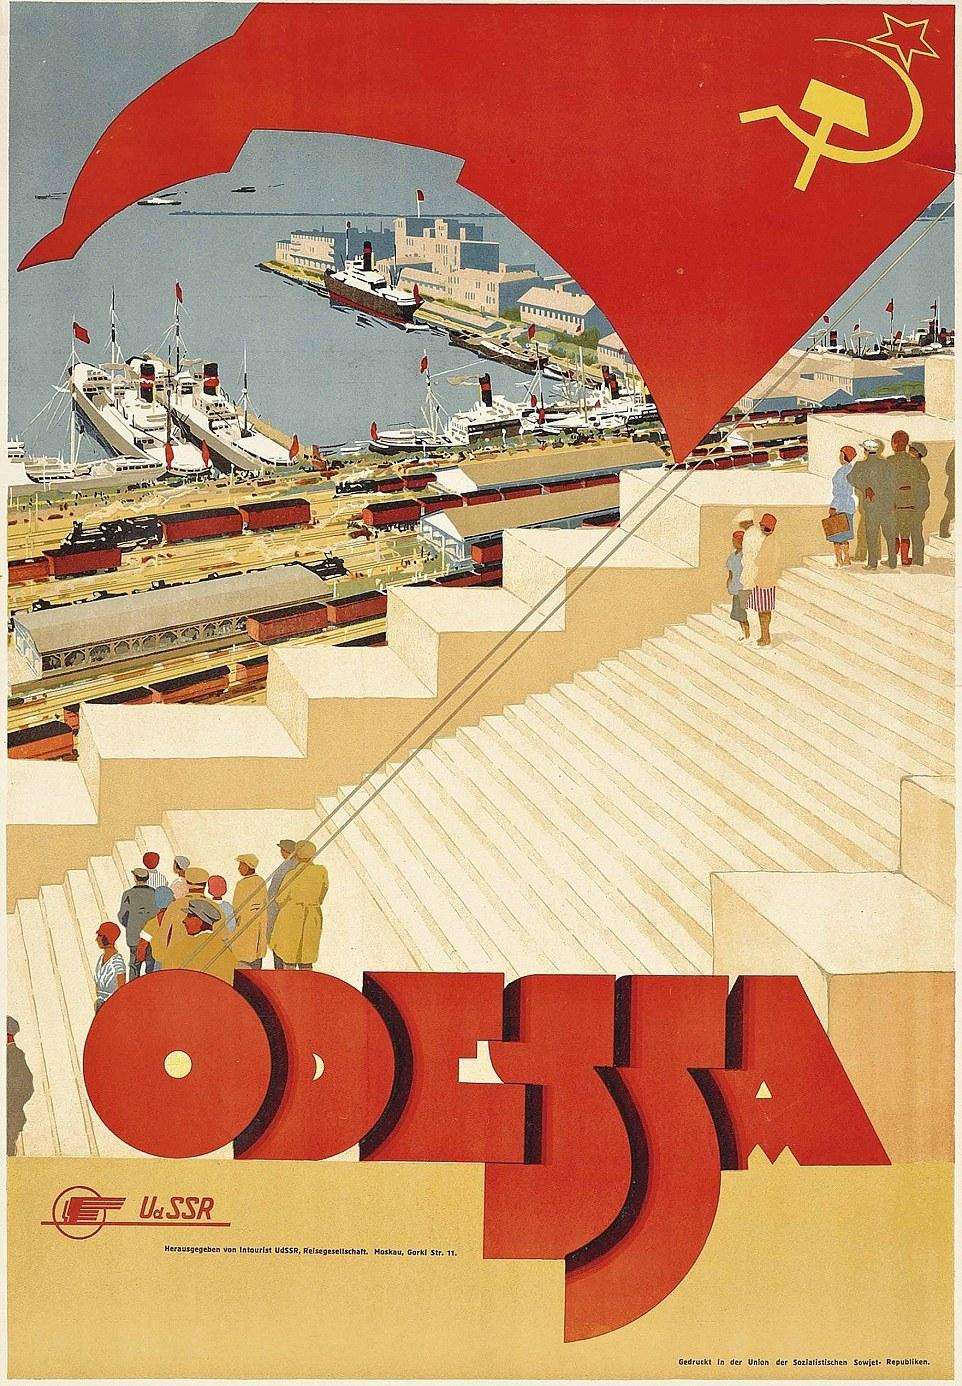 Посмотрев эти плакаты, любой поехал бы в СССР. Даже в 30-е годы